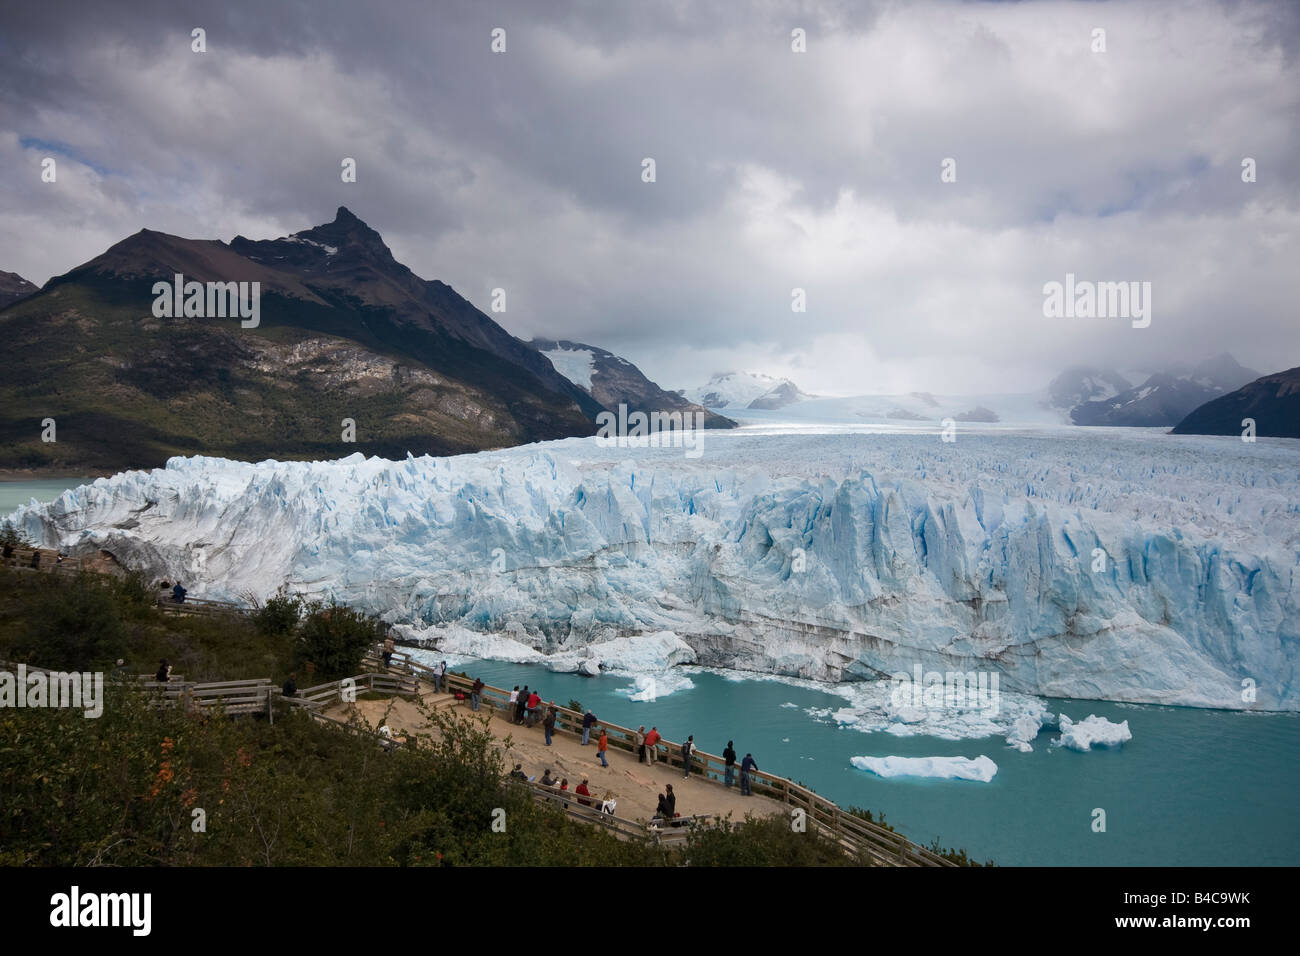 Ghiacciaio Perito Moreno. Ho lasciato il popolo in primo piano per confrontare le enormi dimensioni del ghiacciaio. Foto Stock